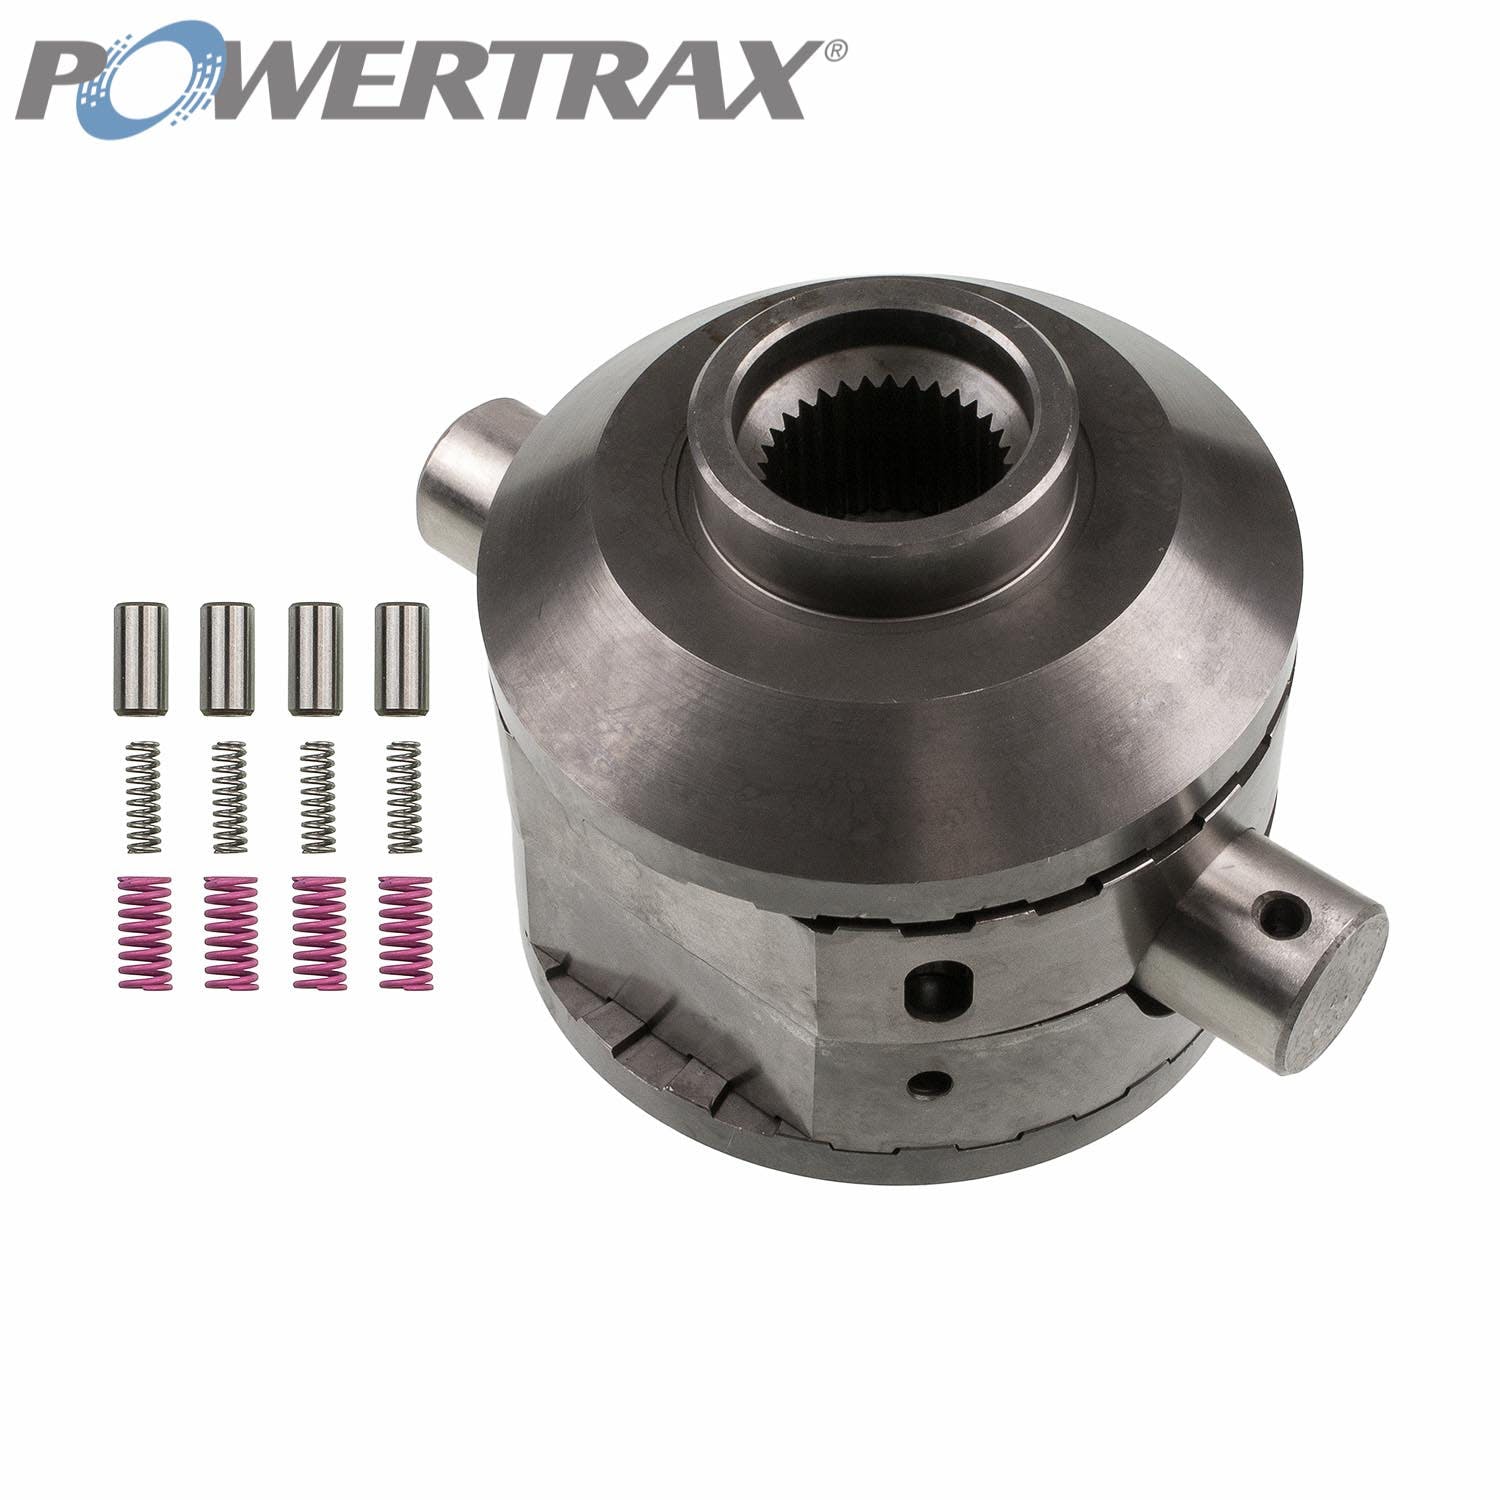 PowerTrax 2711-LR Lock Right Locker